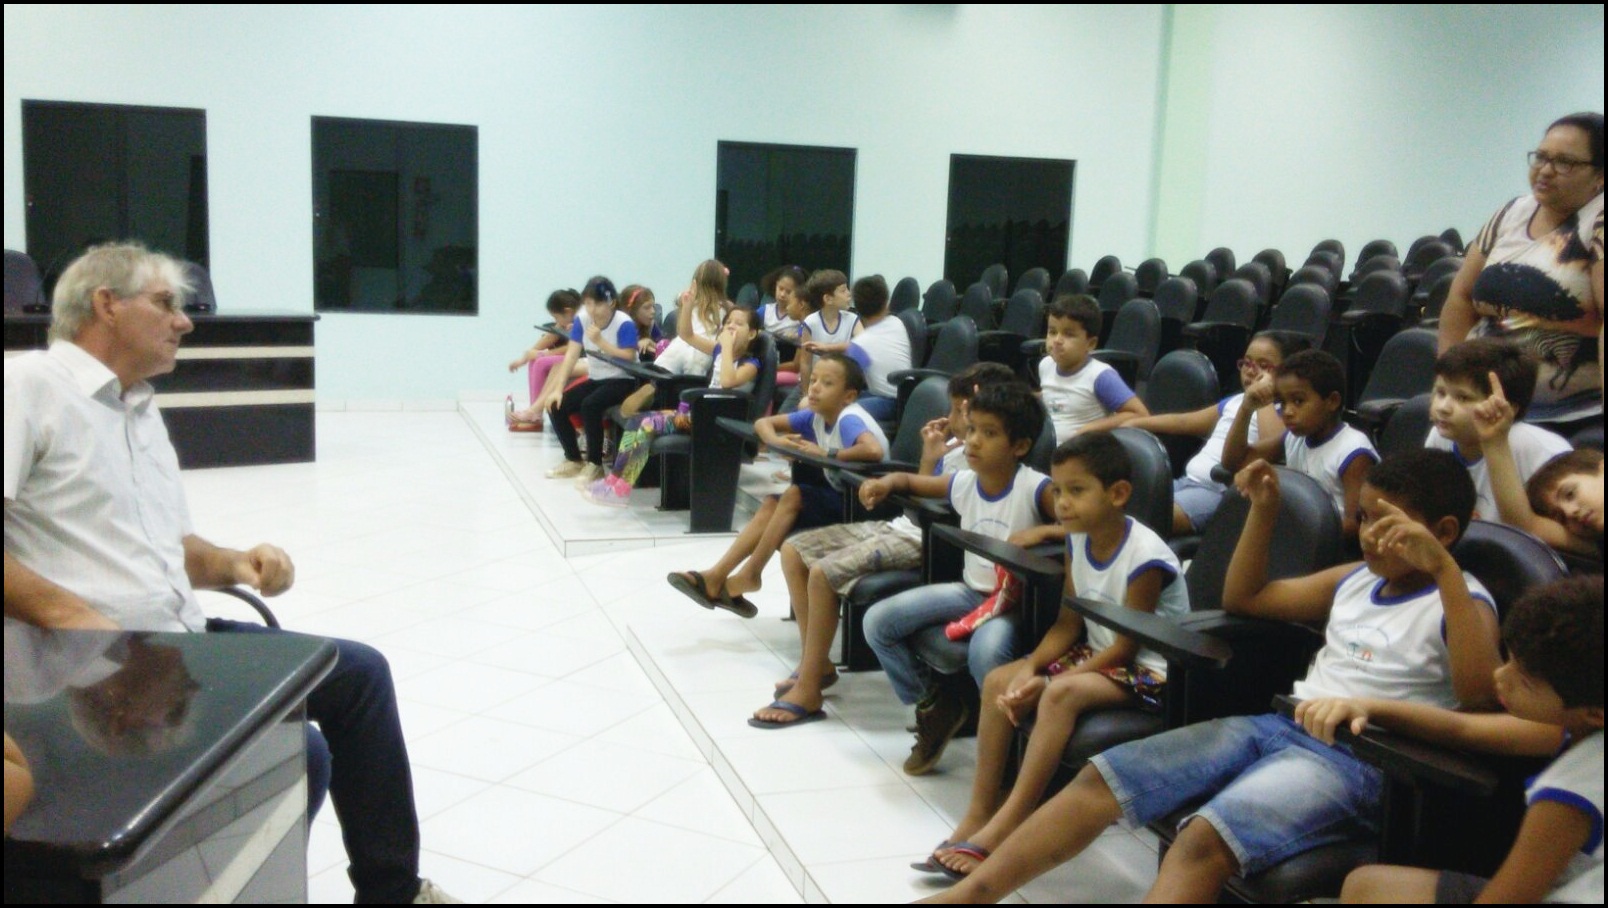 Câmara de Vereadores recebe visita de alunos da Escola Estadual Querência.